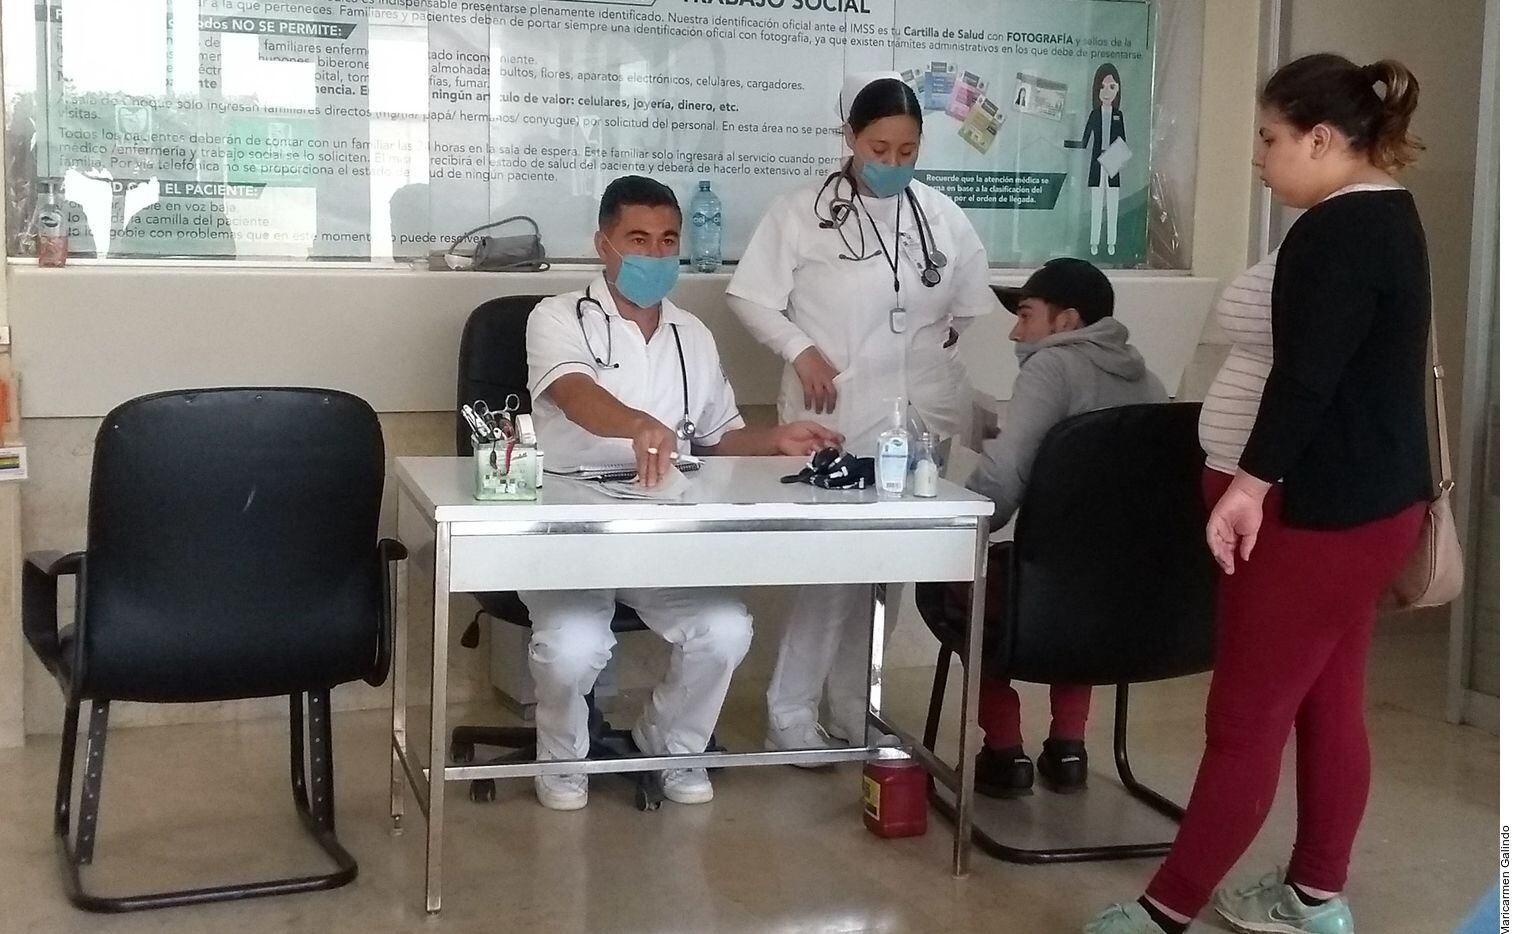 Un caso sospechoso de coronavirus fue detectado ayer en Tlajomulco de Zúñiga, Jalisco,...